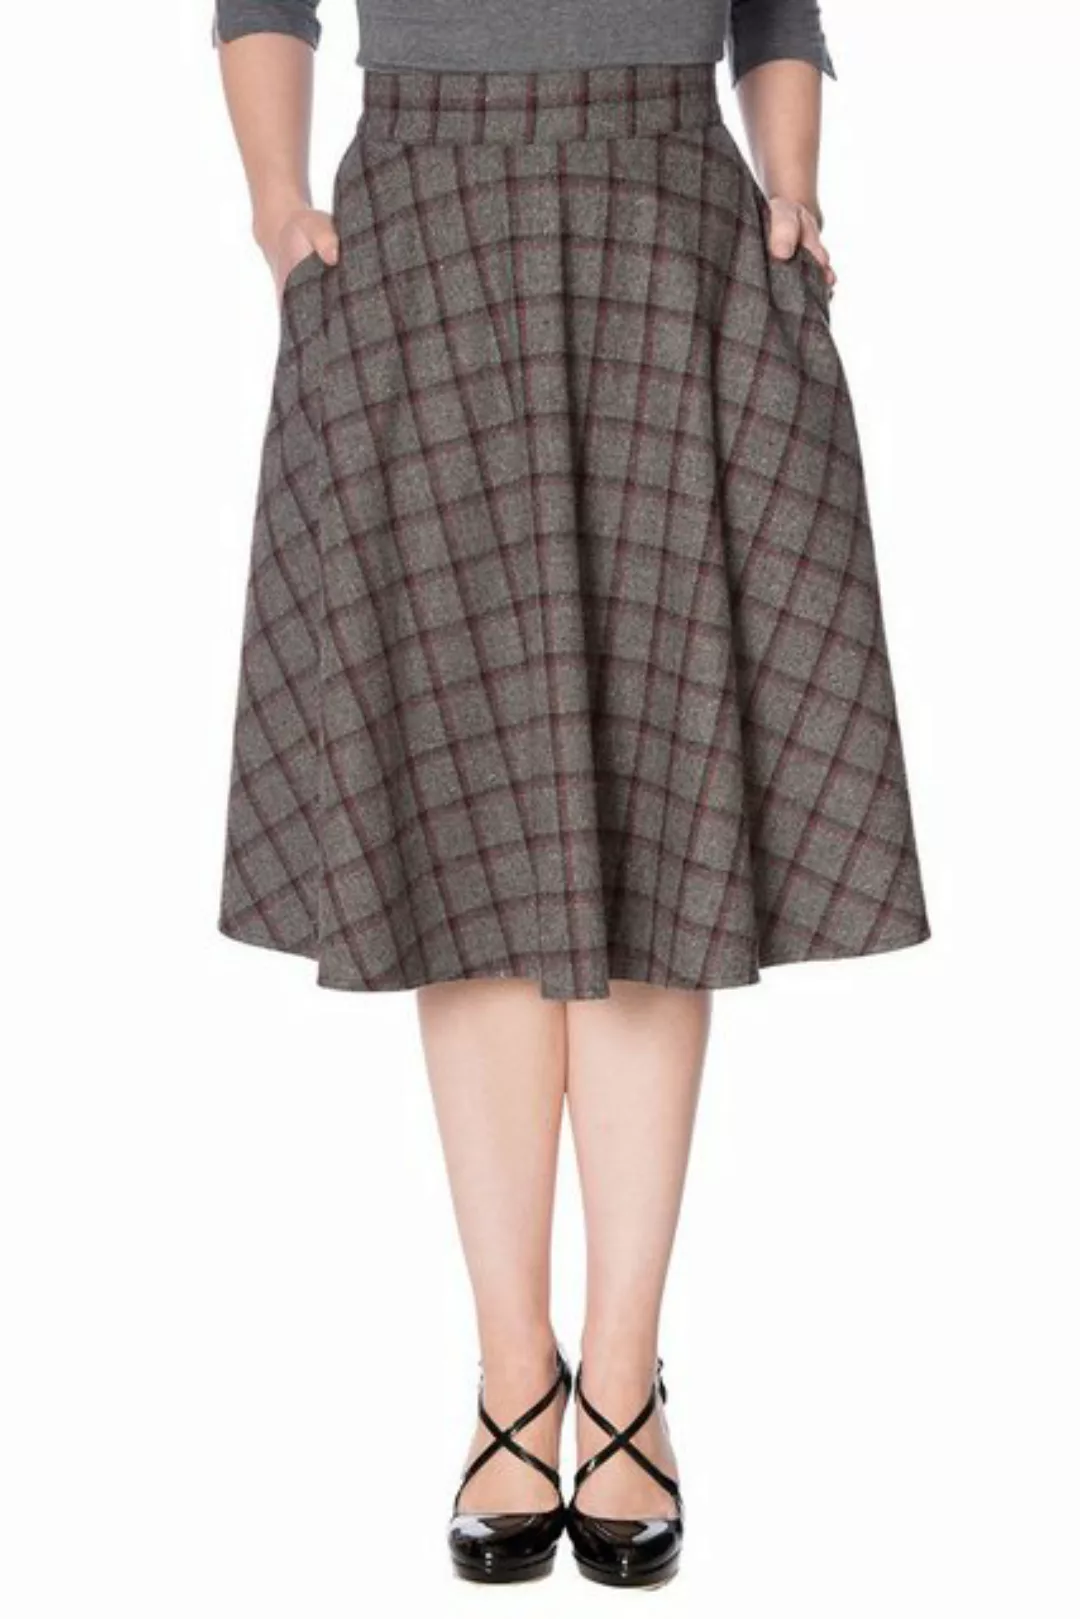 Banned A-Linien-Rock Ladies Day Swing Skirt Grau Vintage A-Linie Rock 50er günstig online kaufen